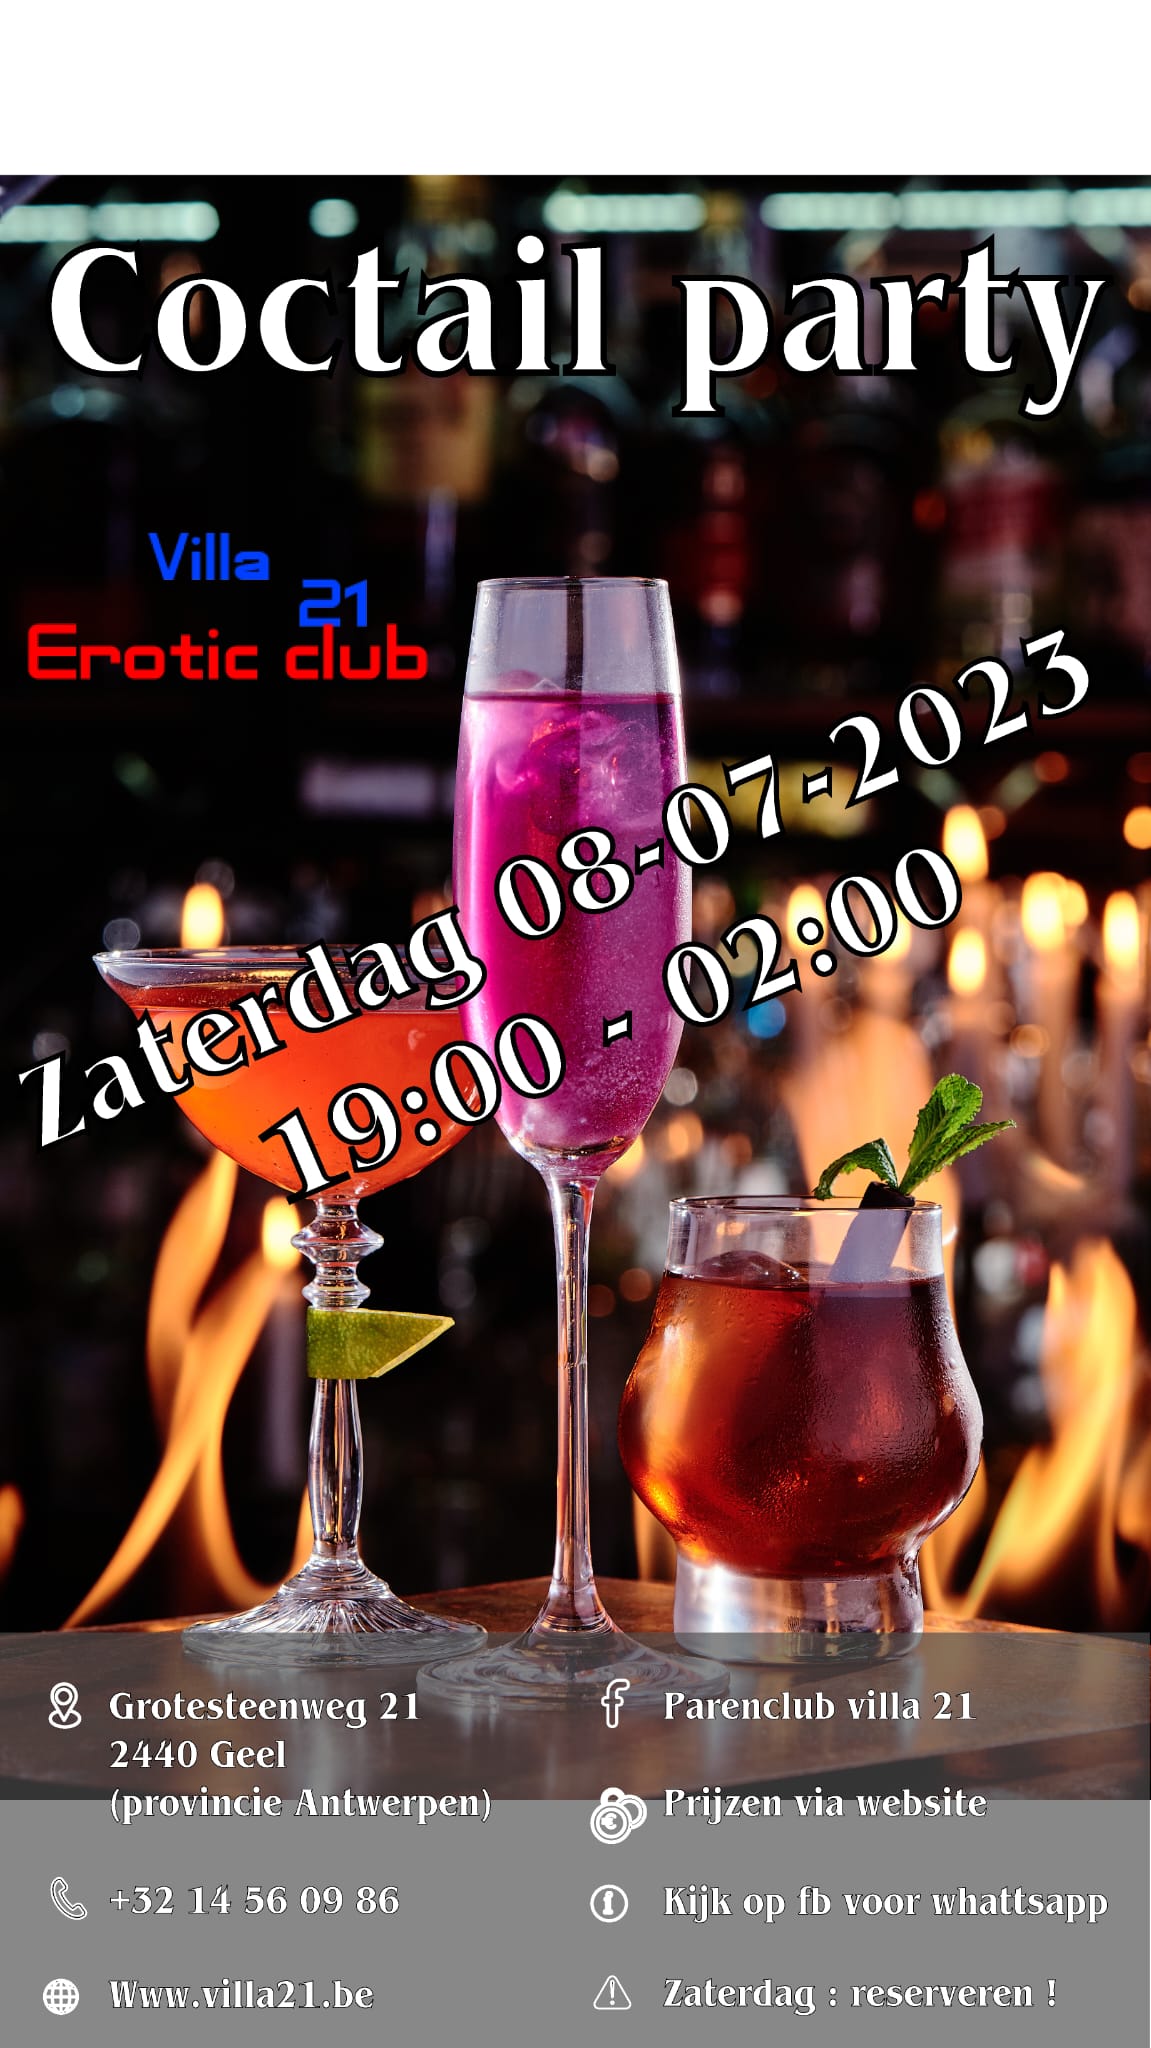 ZATERDAG: Cocktail Party